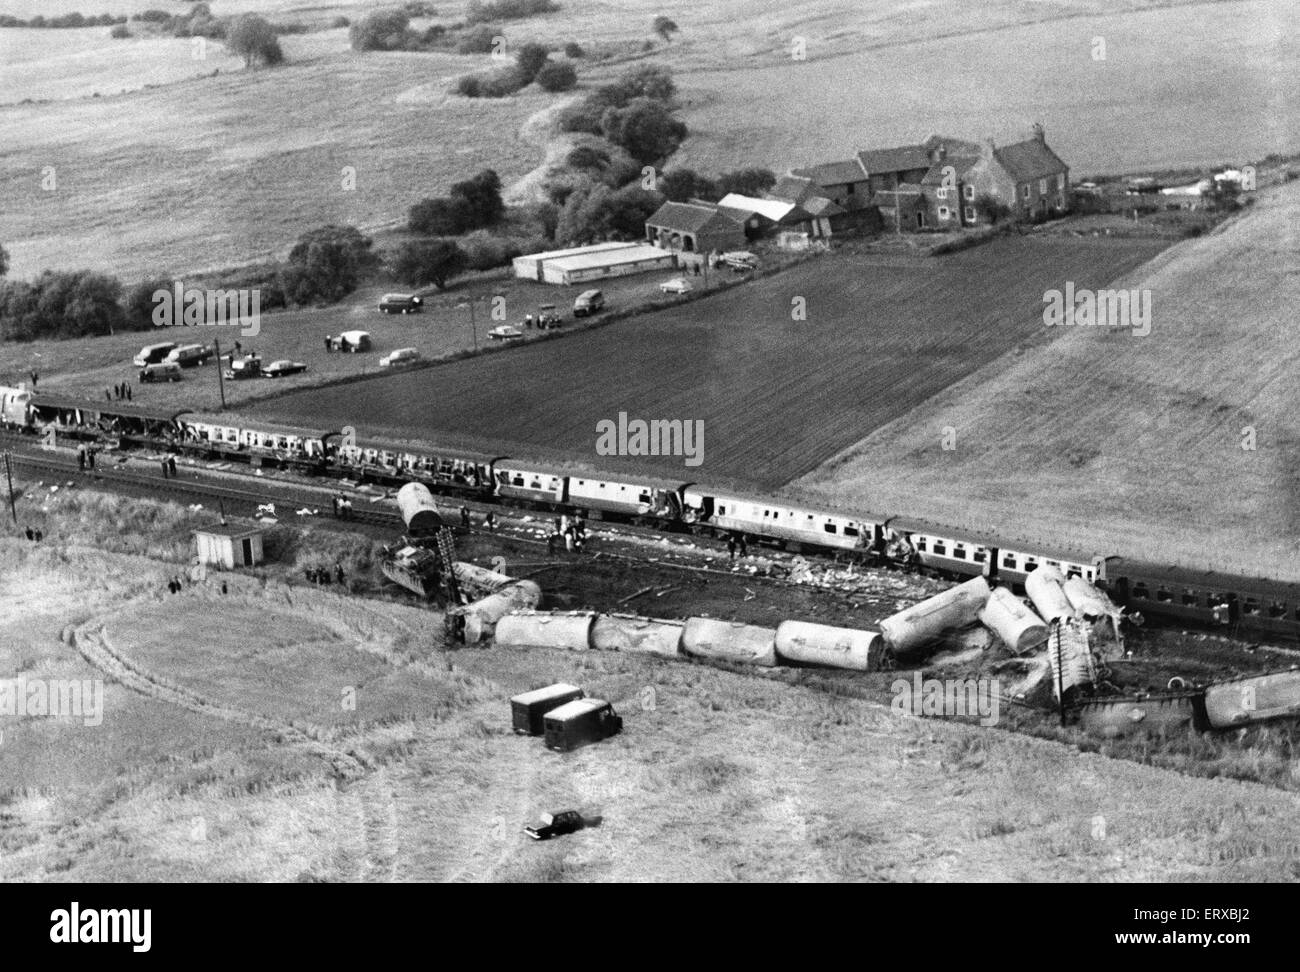 Topcliffe, Thirsk Zugunglück. Luftaufnahme von 12,00 Schnellzug von Kings Cross nach Edinburgh das Tempo mit den Trümmern ein entgleister Güterzug kollidierte um 15:17 an diesem Tag. Sieben Menschen wurden getötet und 45 verletzt, 15 ernst.  31. Juli 1967 Stockfoto